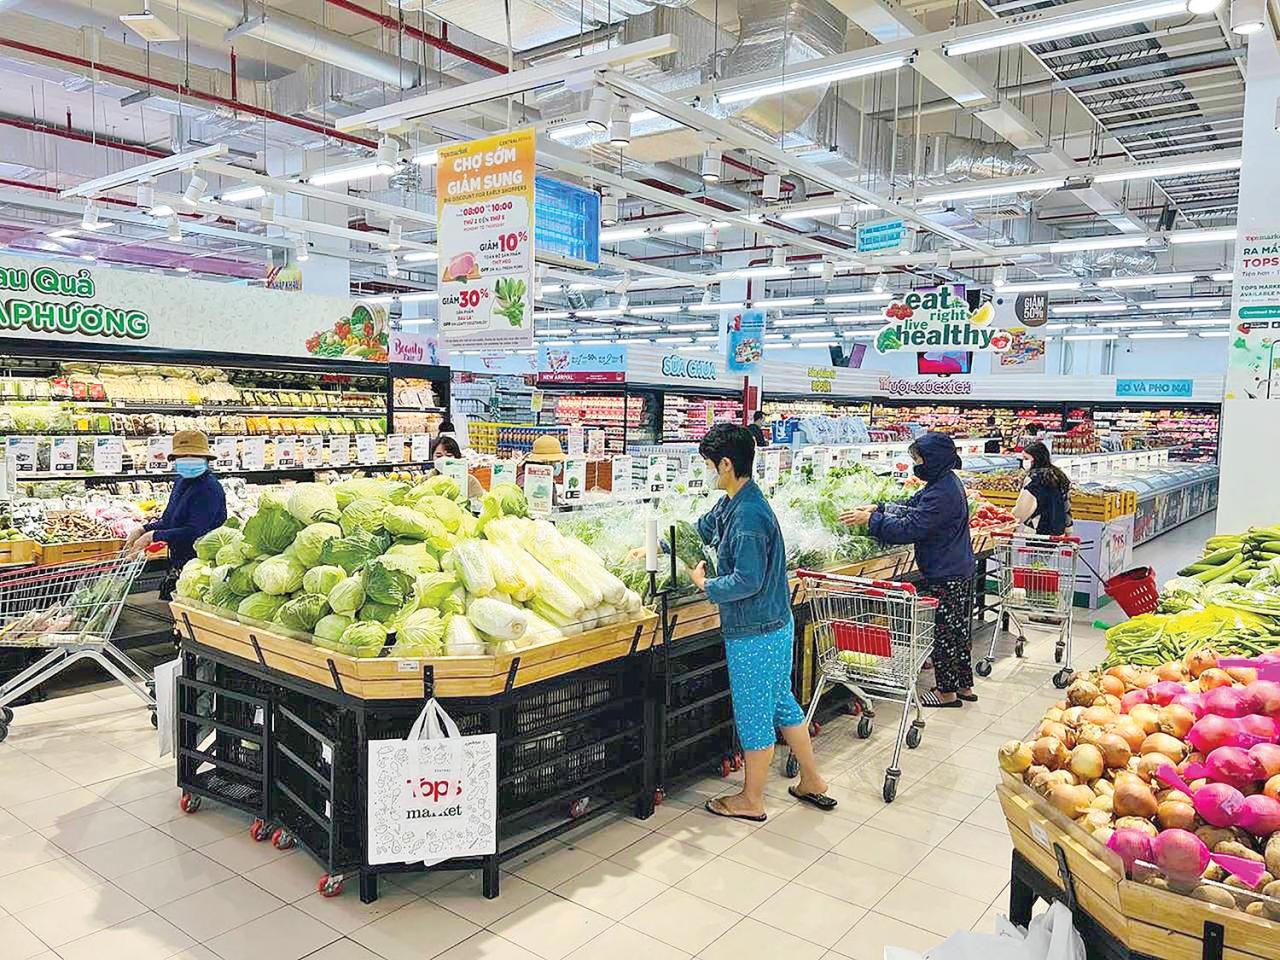 Central Food Retail đã mở rộng hoạt động kinh doanh ở tất cả các phân khúc và có nhiều mô hình cửa hàng, như Tops Market, Tops Food Hall, Tops Daily...